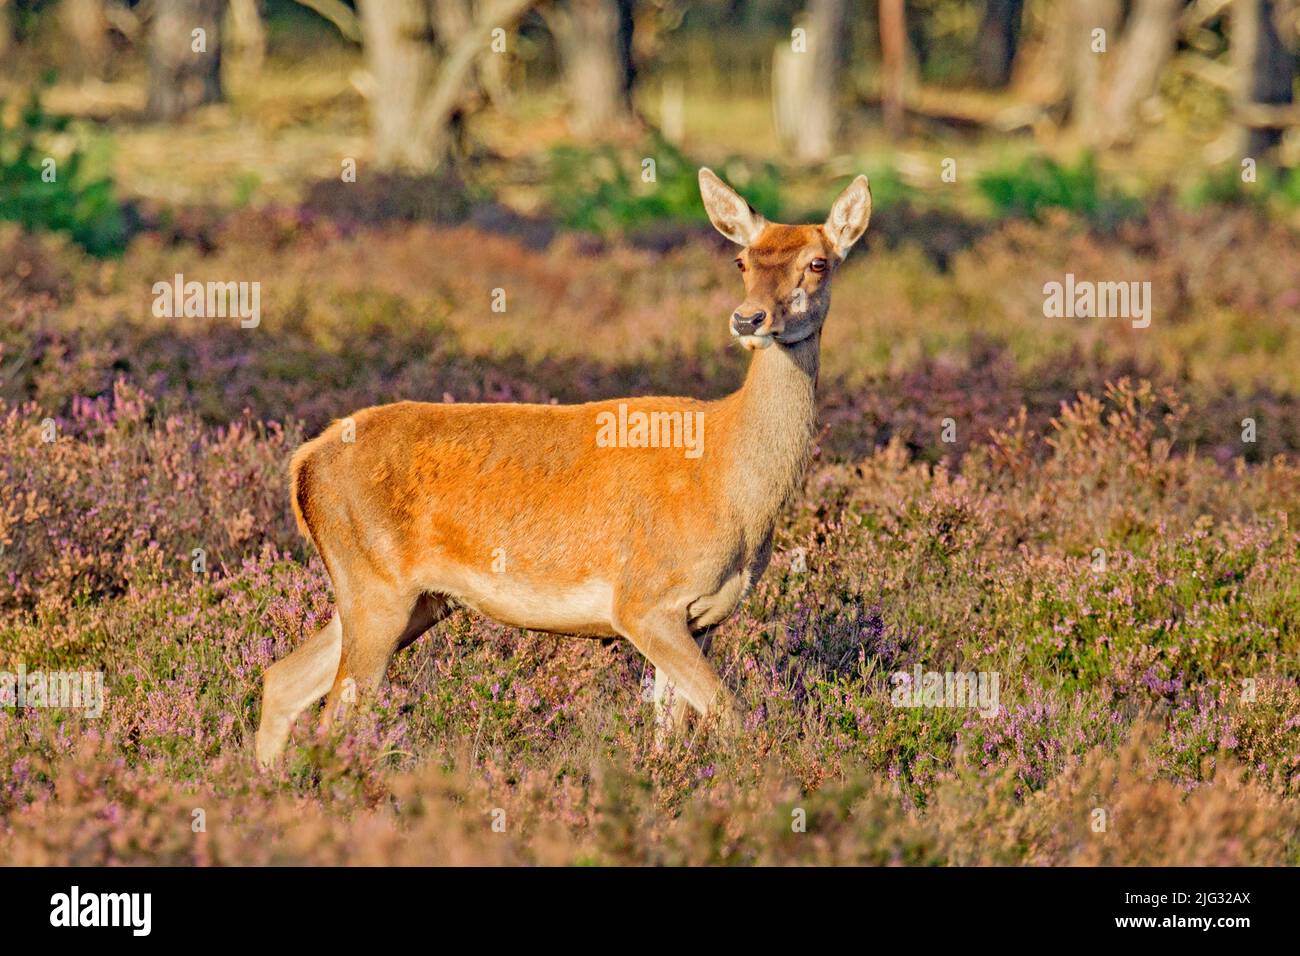 red deer (Cervus elaphus), red hind standing in blooming heathland, Germany Stock Photo